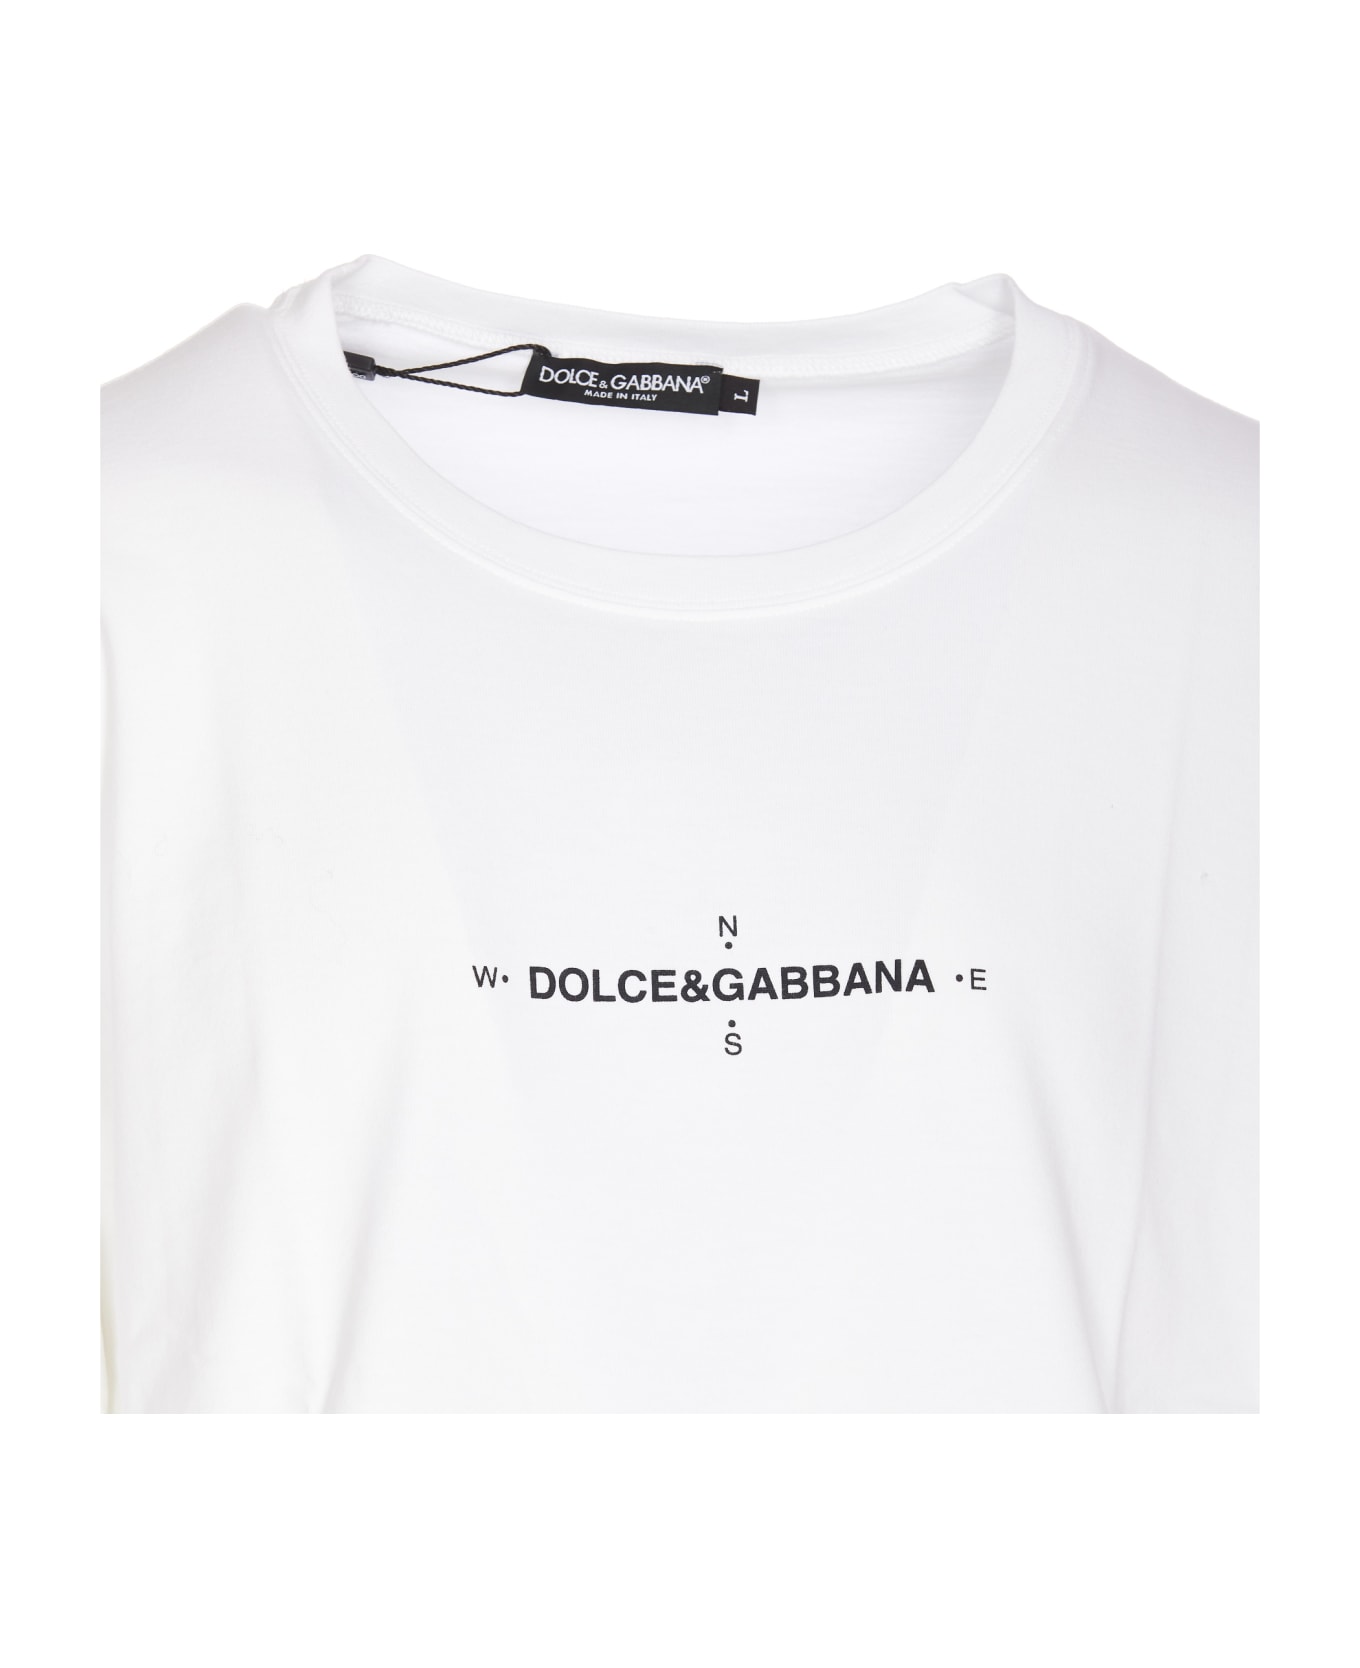 Dolce & Gabbana Marina Print T-shirt - Bianco Ottico